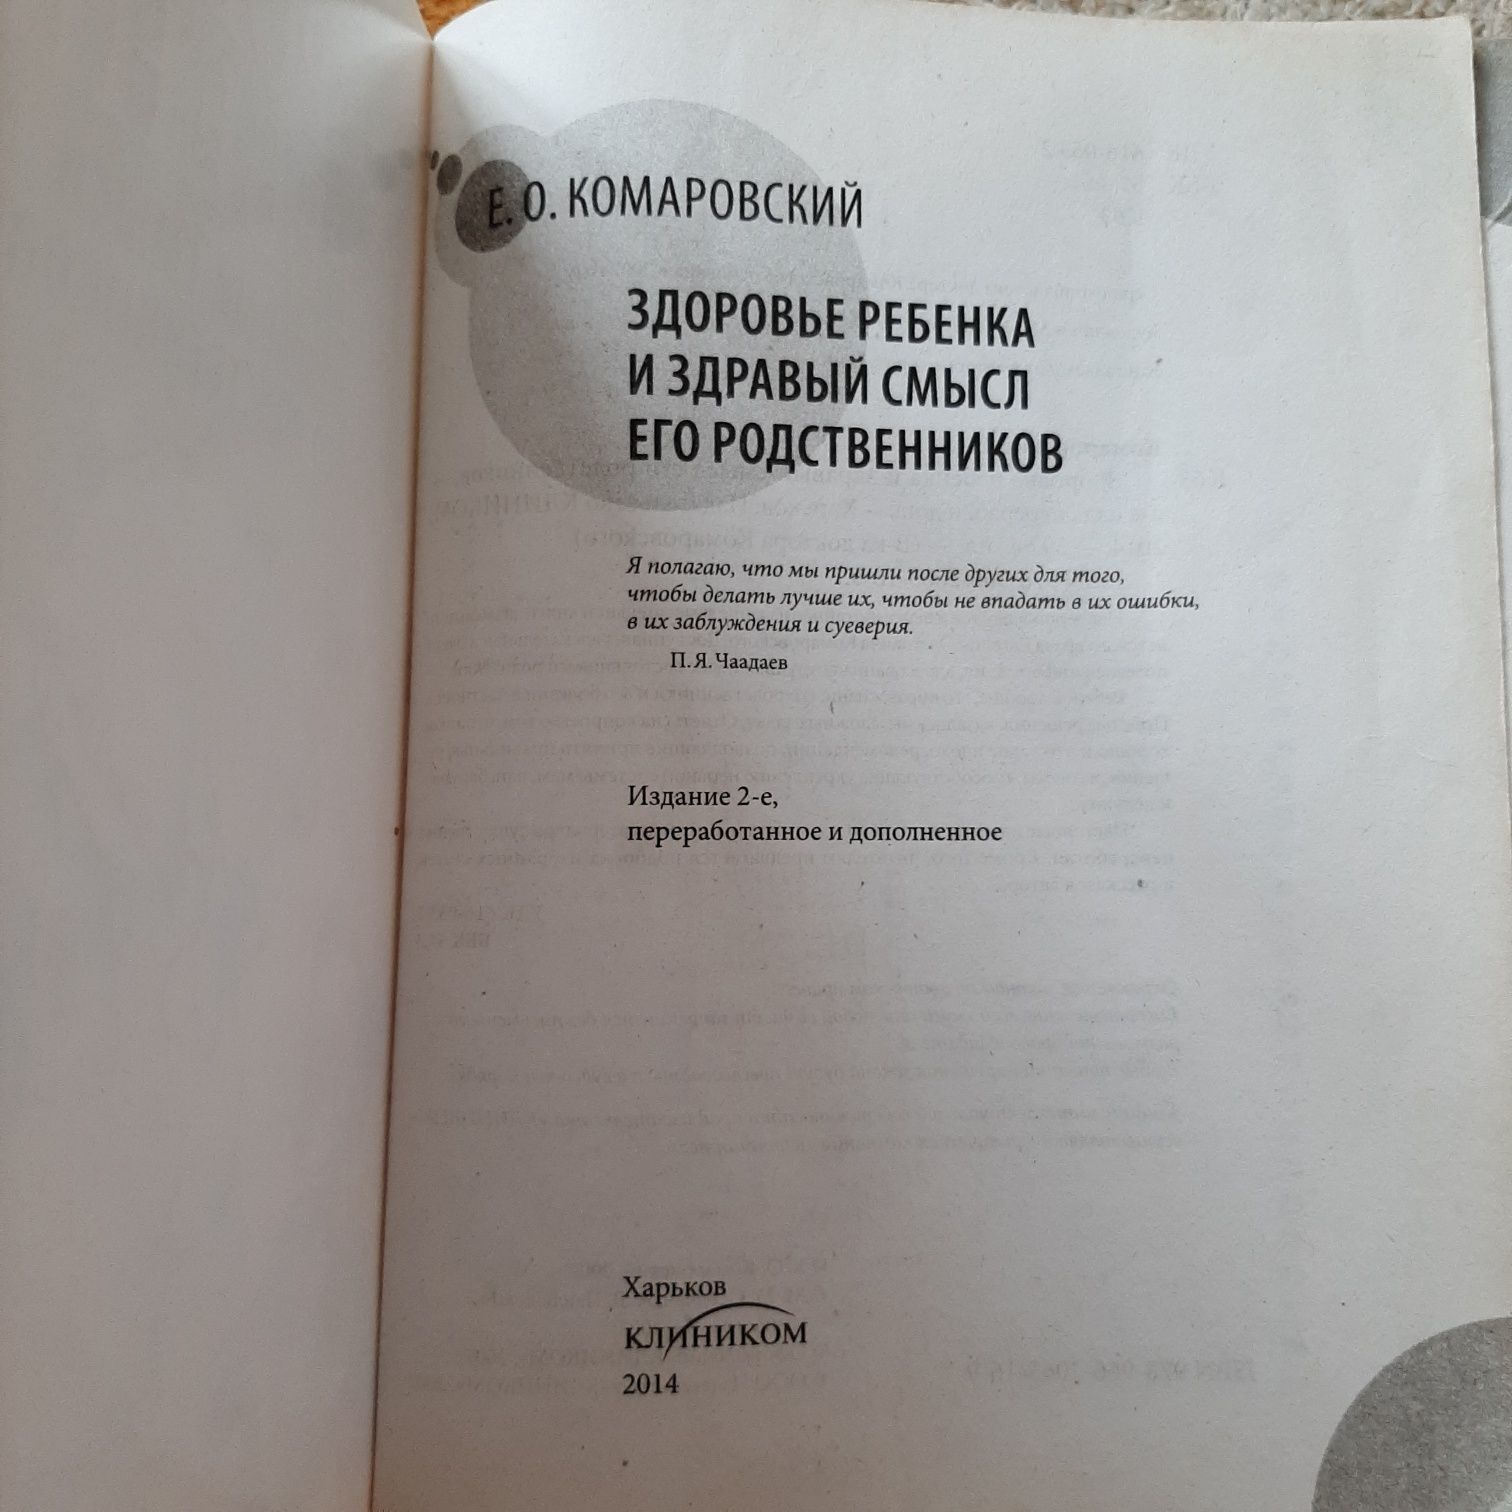 Комаровский Здоровье ребёнка 2014 592 стр.